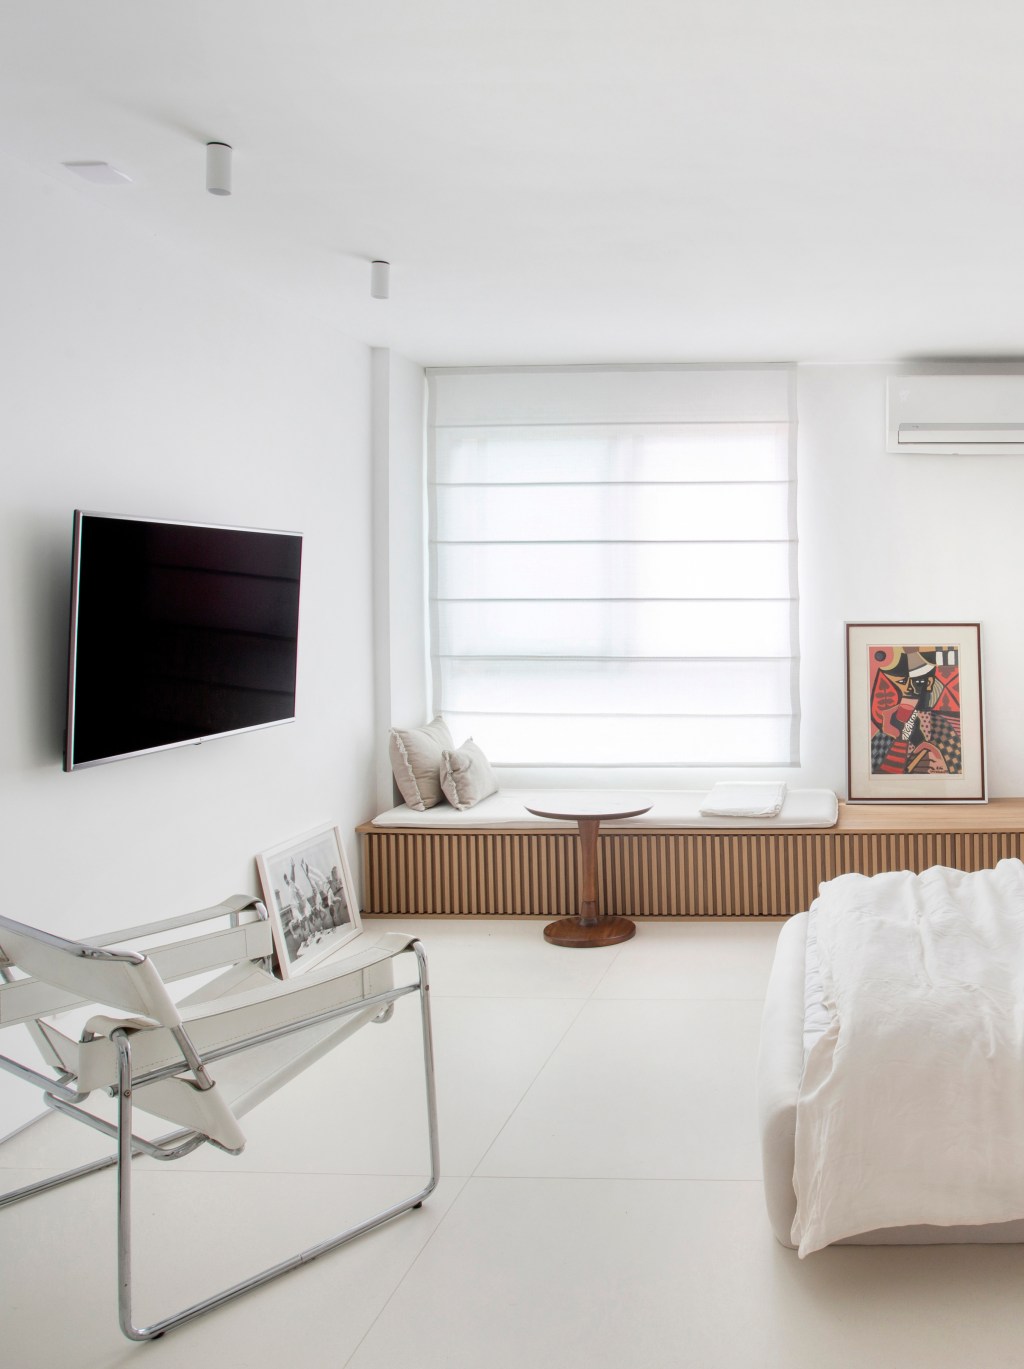 Loft de 40 m² ganha projeto minimalista que une branco e madeira. Projeto de Diego Raposo e Manuela Simas. Na foto, quarto com tv e banco ripado.